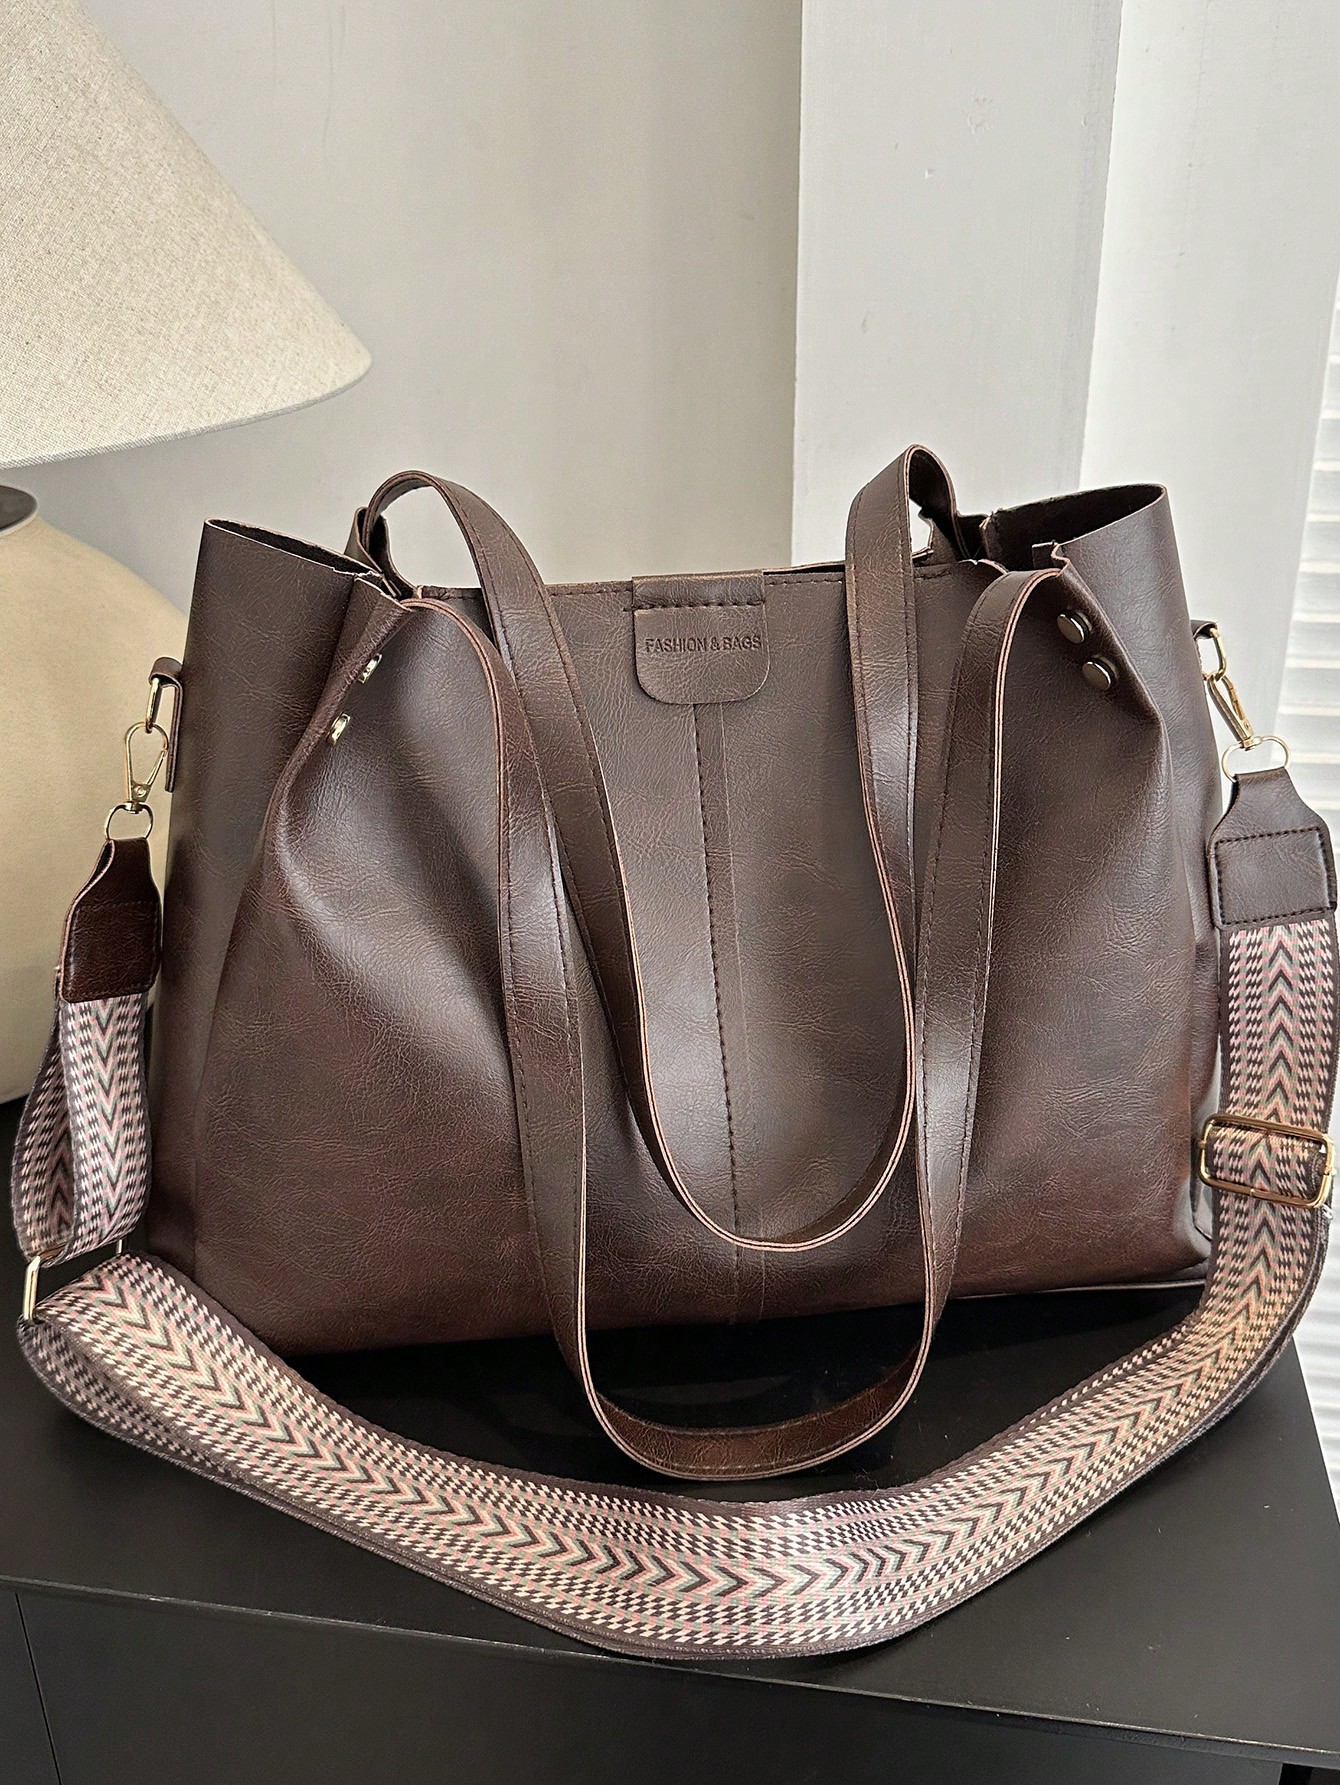 рюкзак на плечо 17 дюймов в винтажном стиле для путешествий Модная женская сумка через плечо нового дизайна в винтажном стиле с широким ремнем, кофейный коричневый